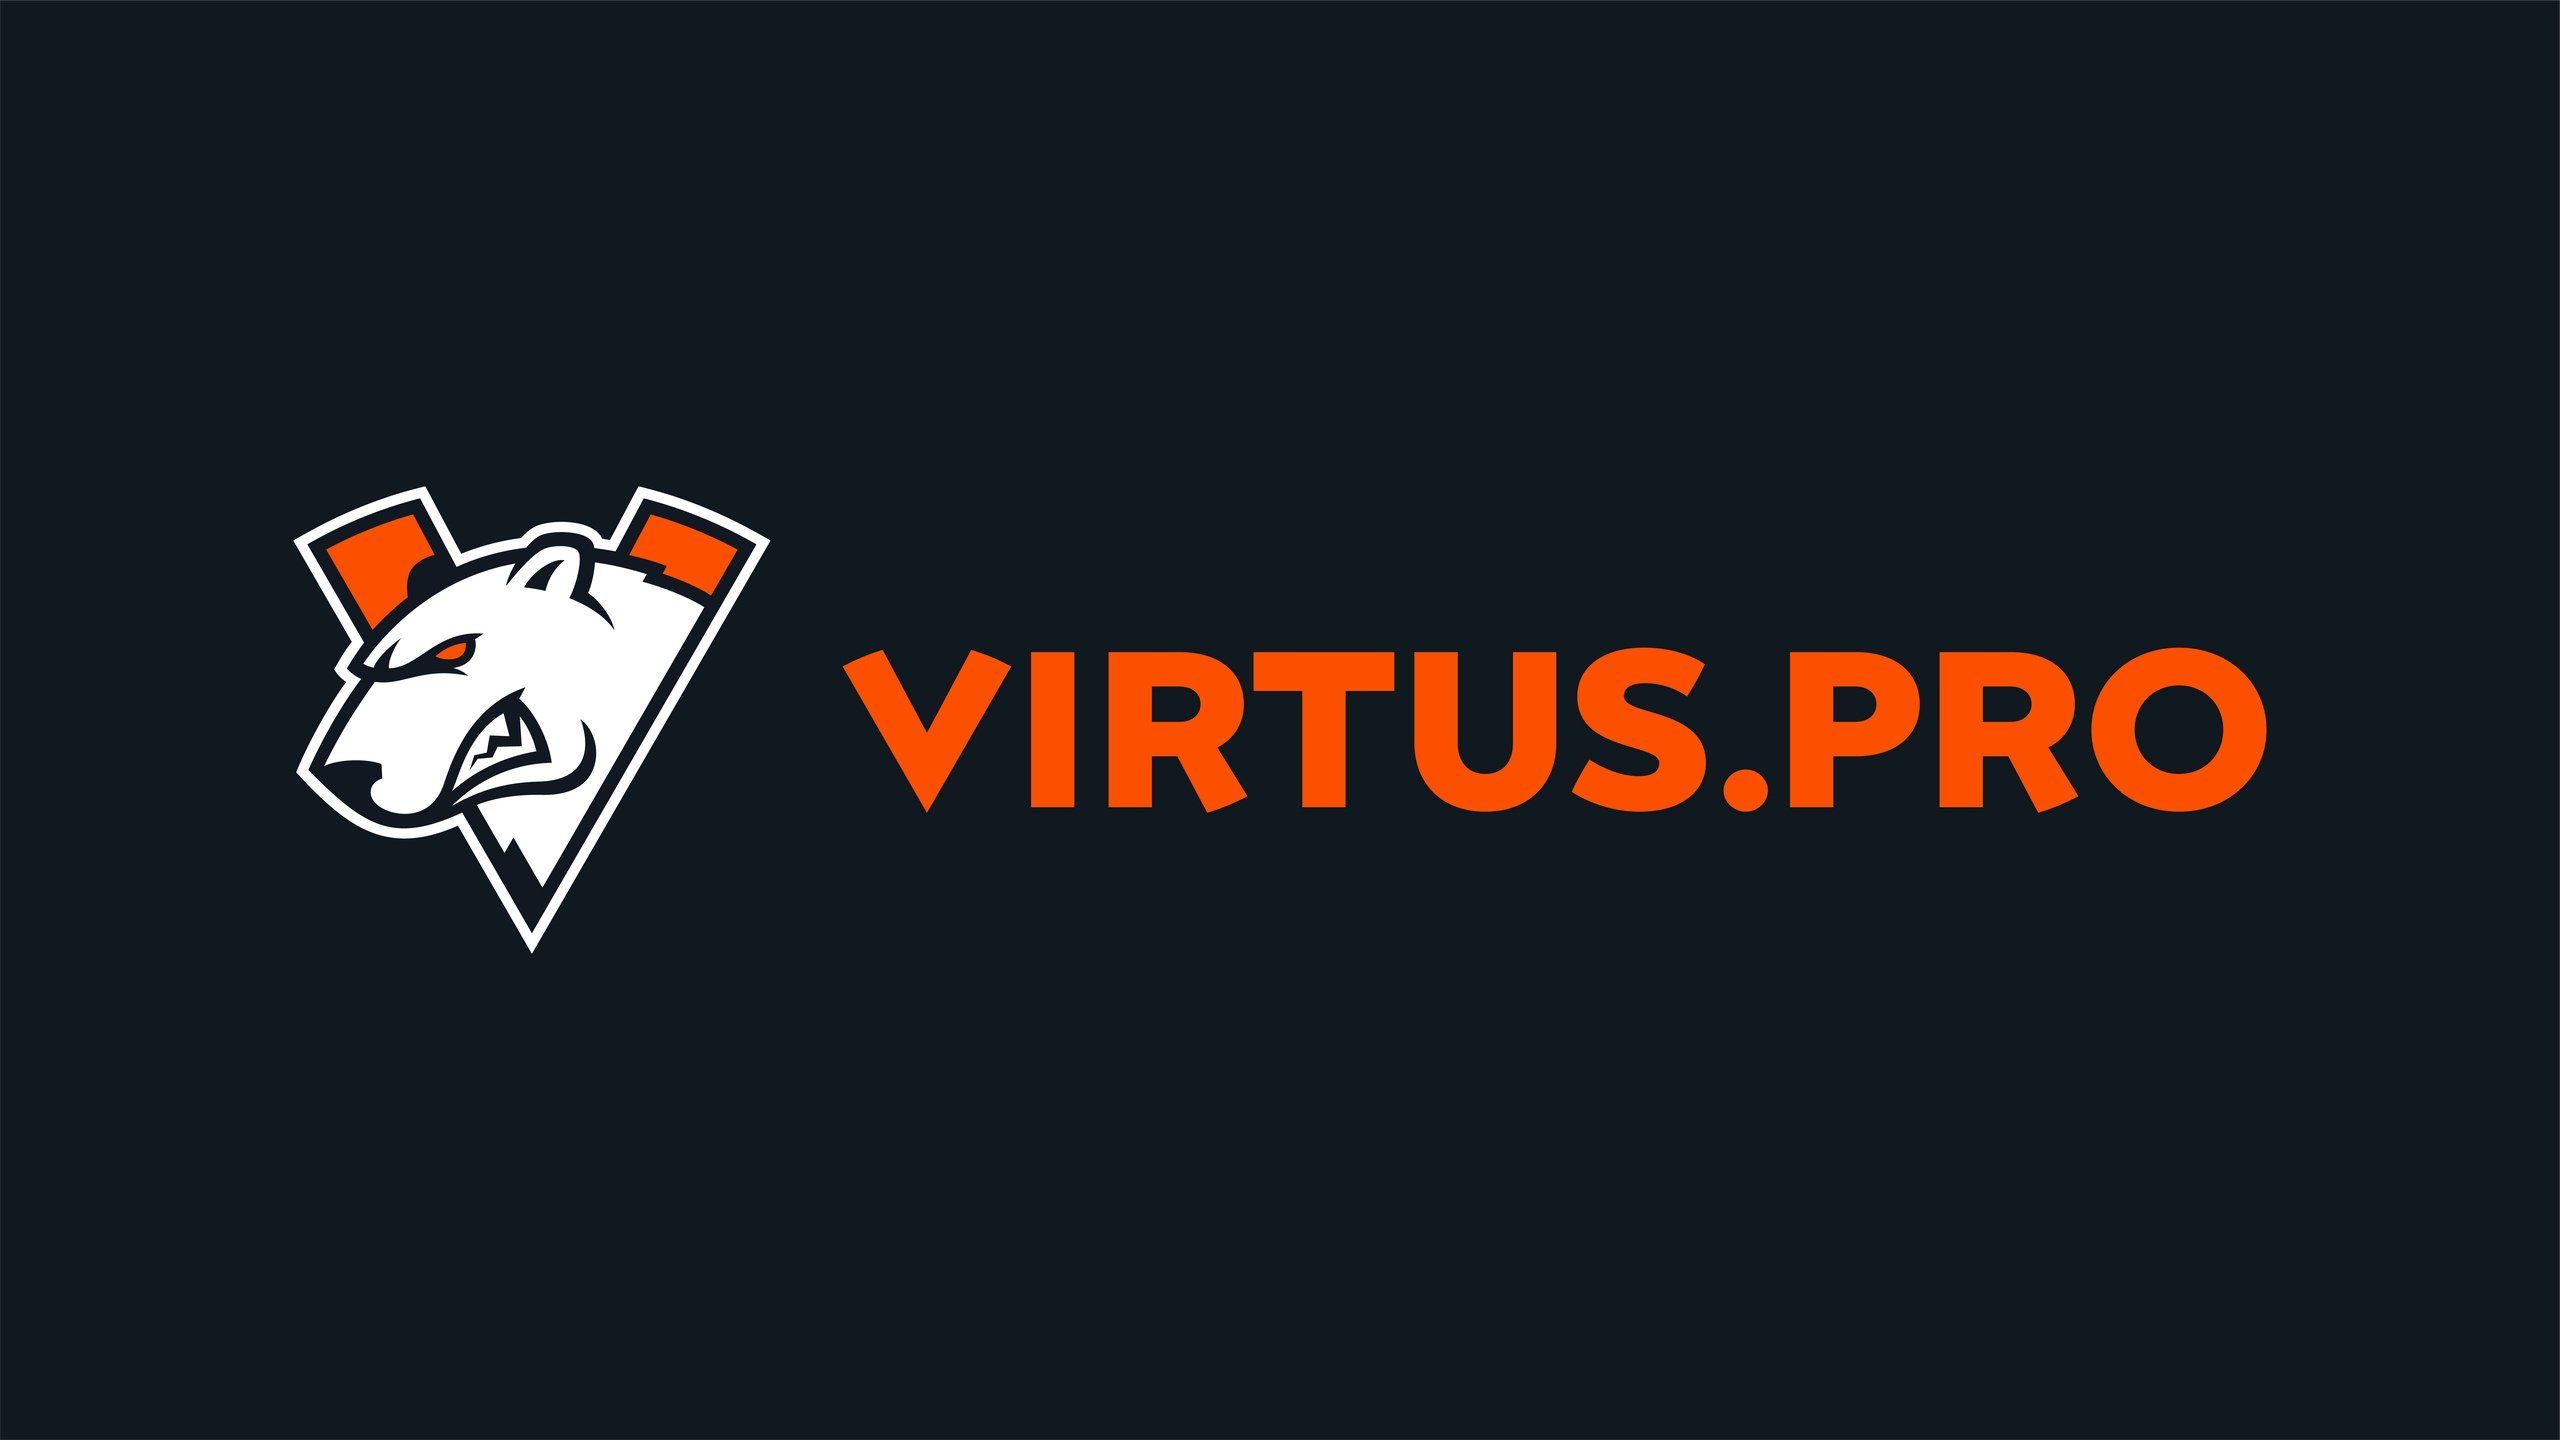 Virtus.pro одержала вторую победу на ESL Pro League Season 13